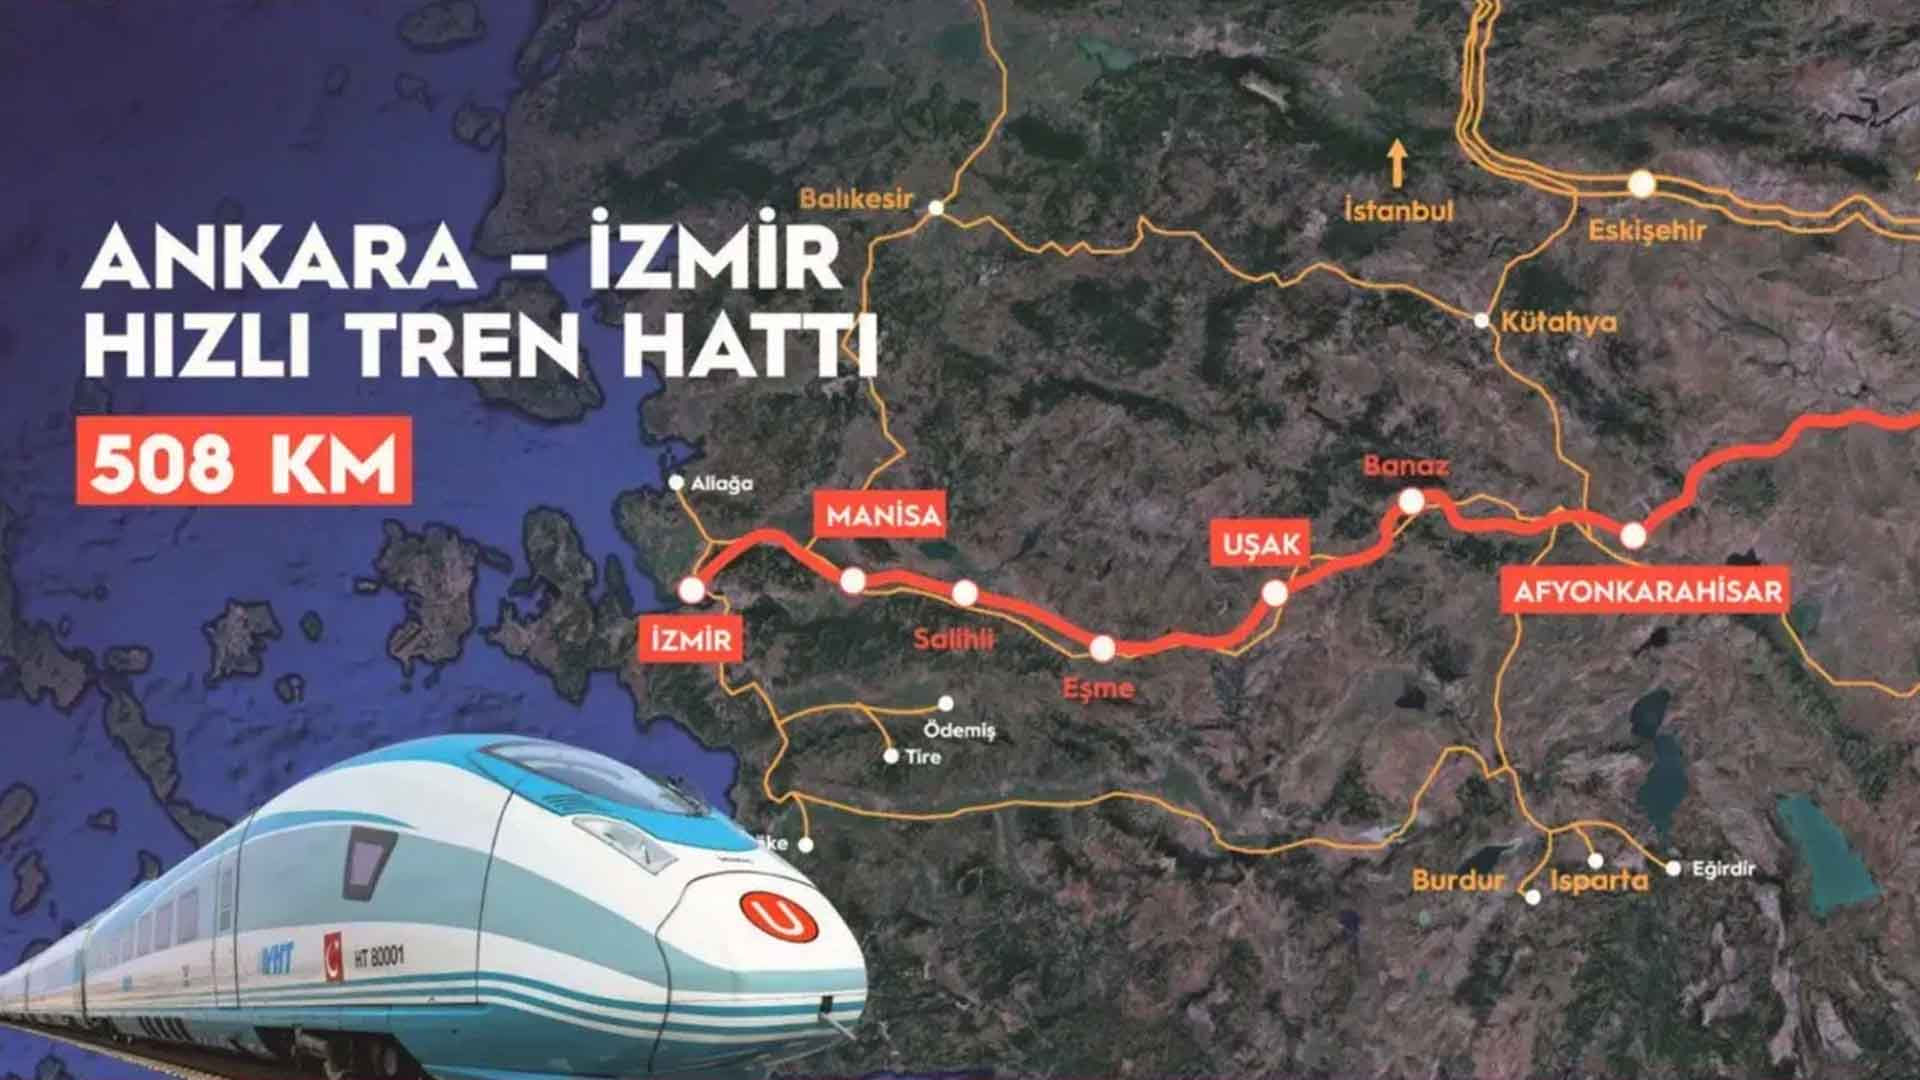 Ankara-İzmir 3 saat 30 dakikaya düşecek